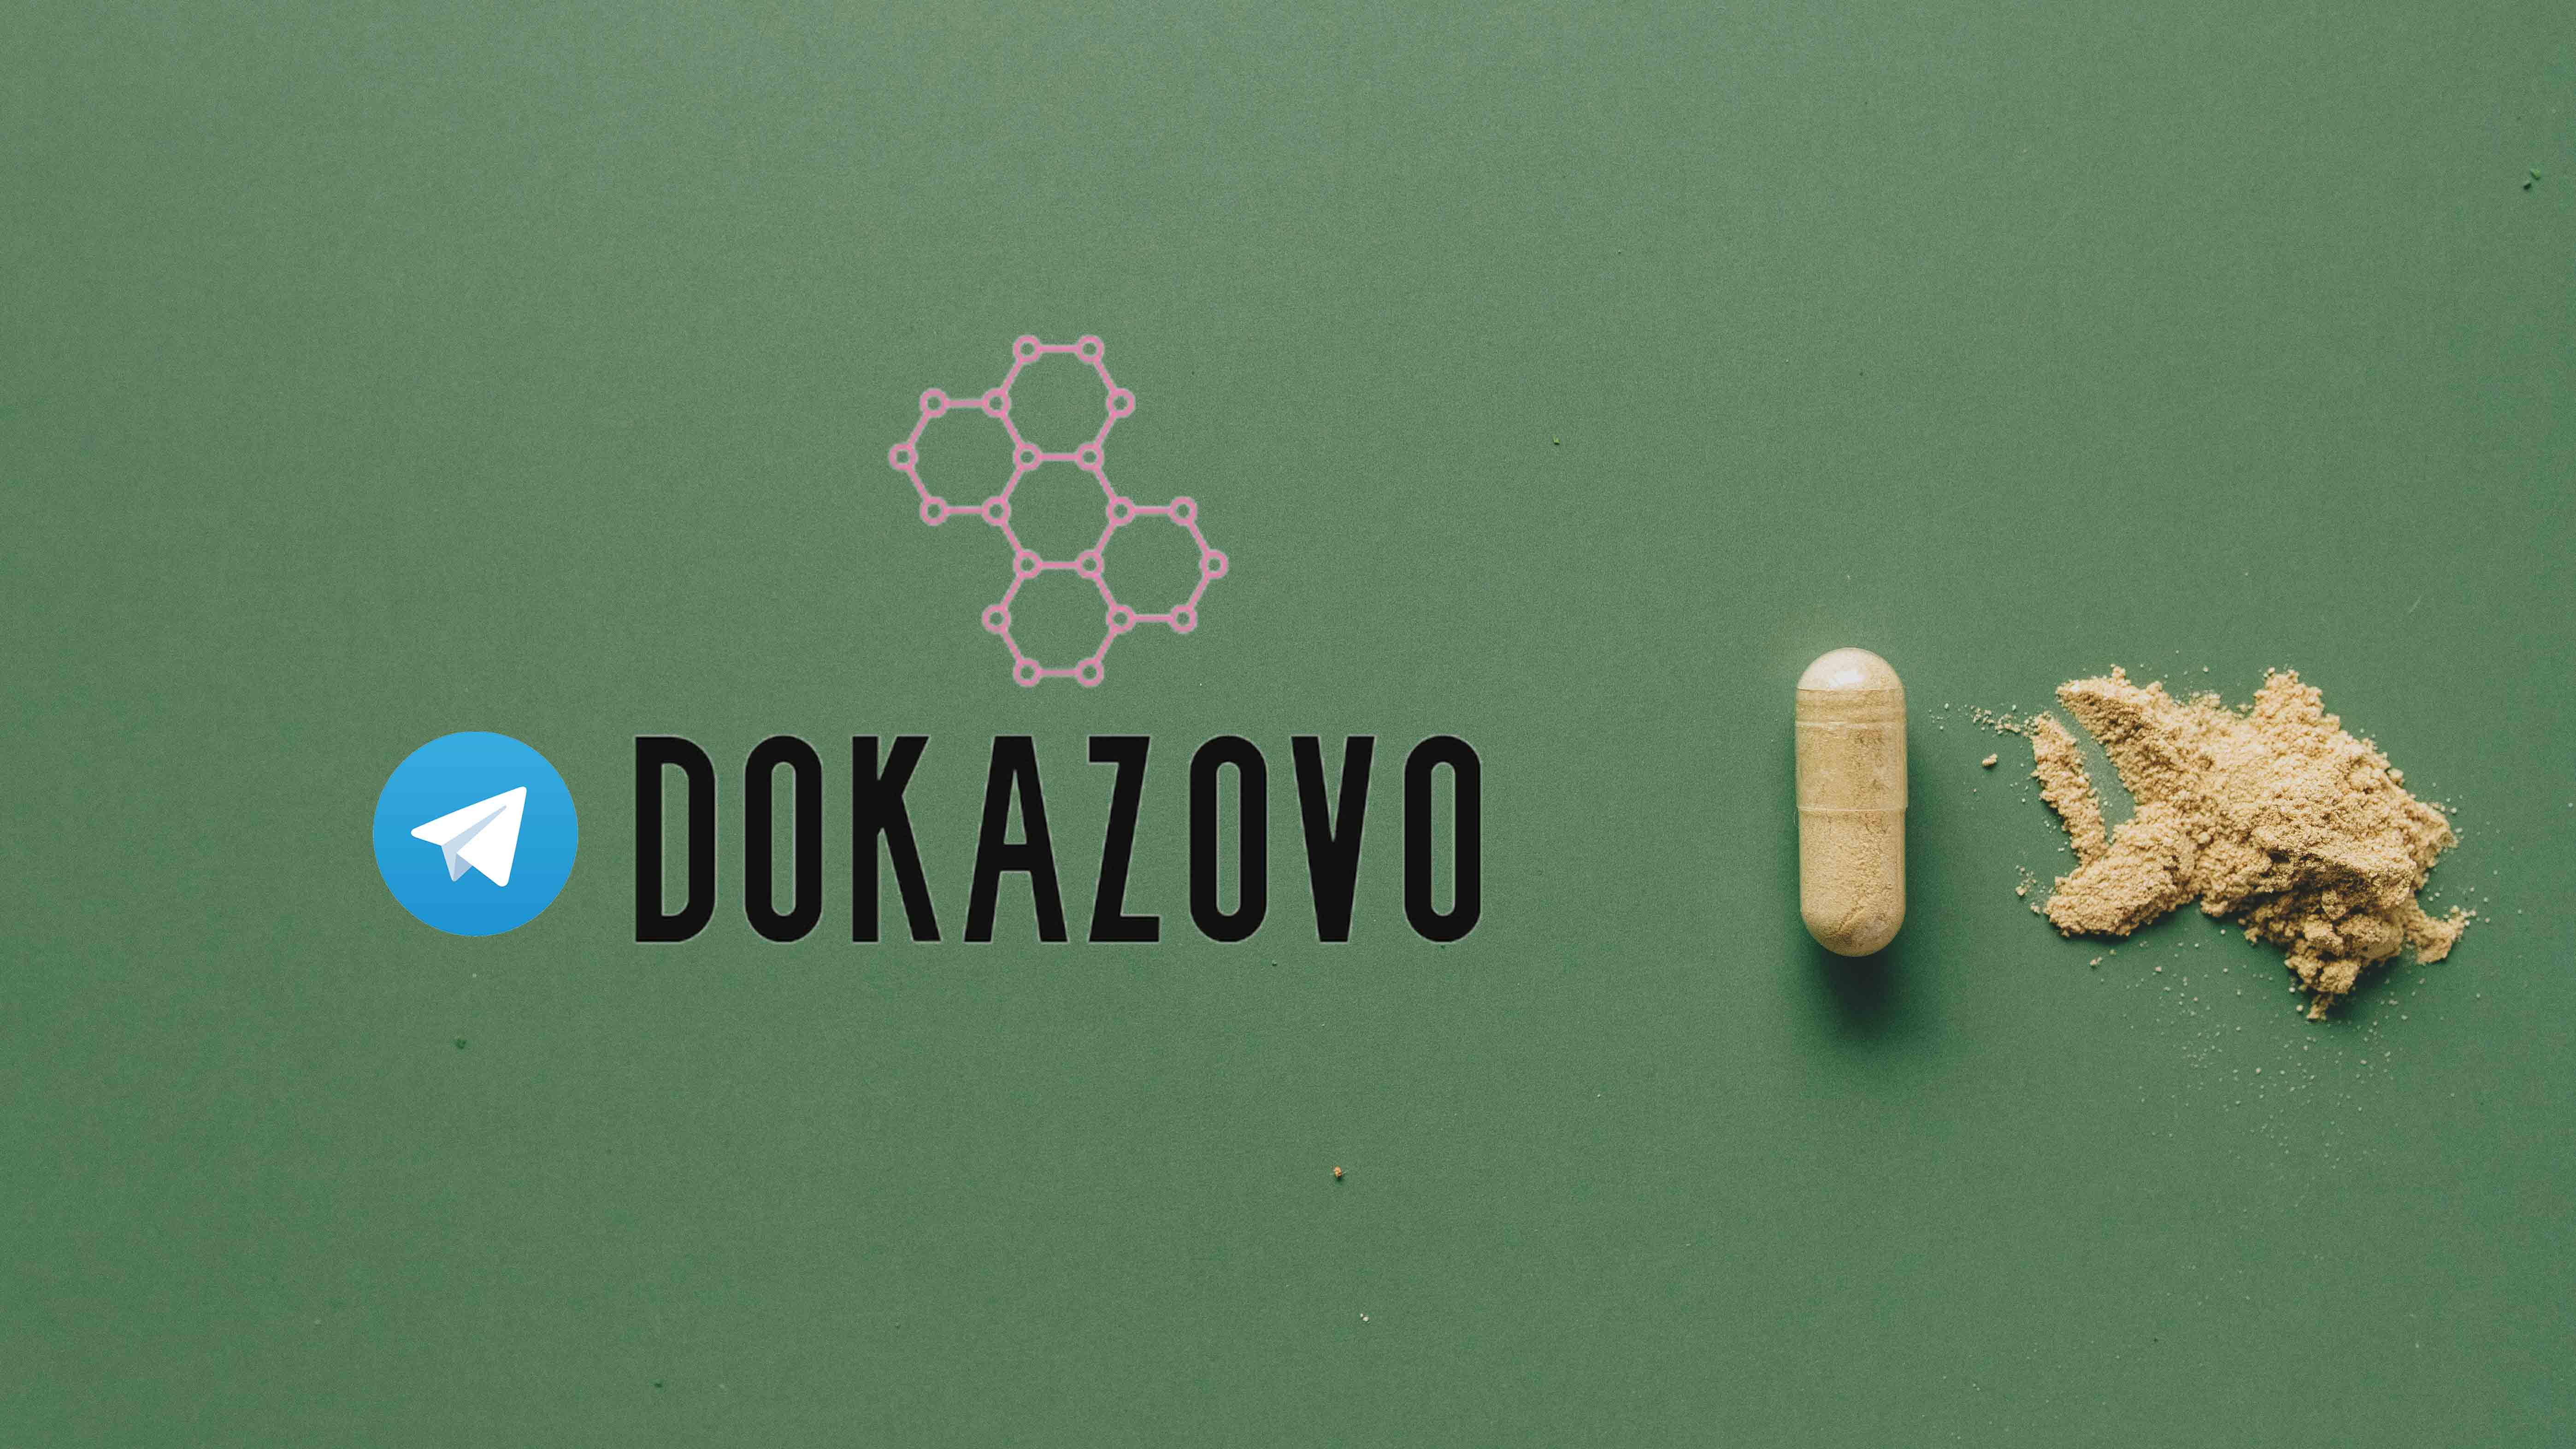 Dokazovo. Как украинский разработчик создал чат-бот для проверки лекарств - Фото